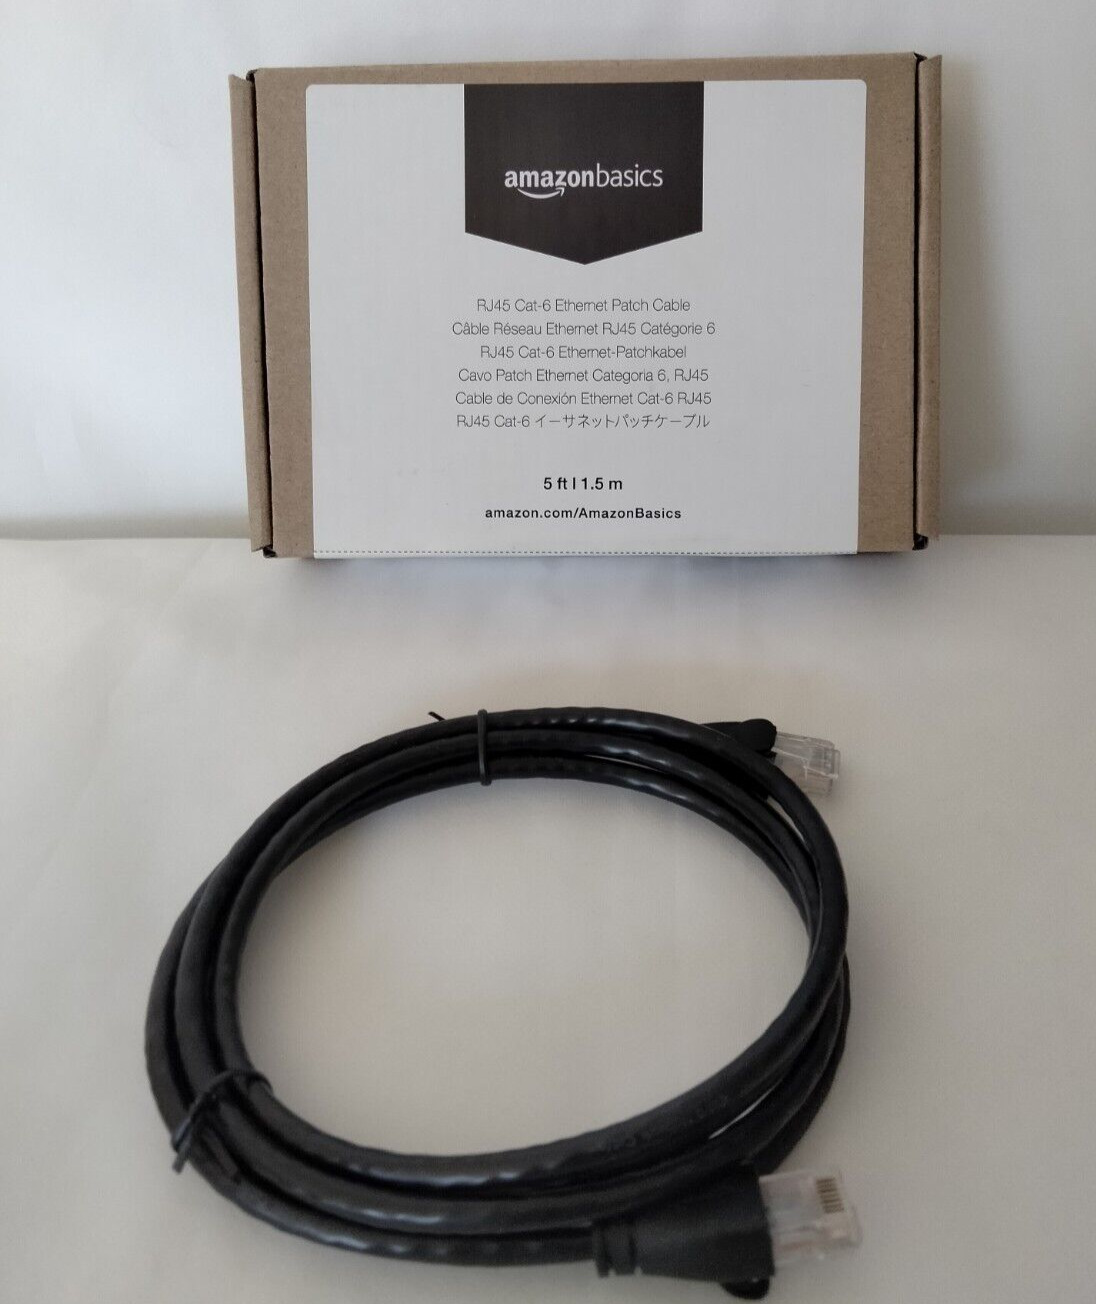 Amazon Basics RJ45 Cat-6 Ethernet Patch Internet Cable 5-ft  1.5m Black Color